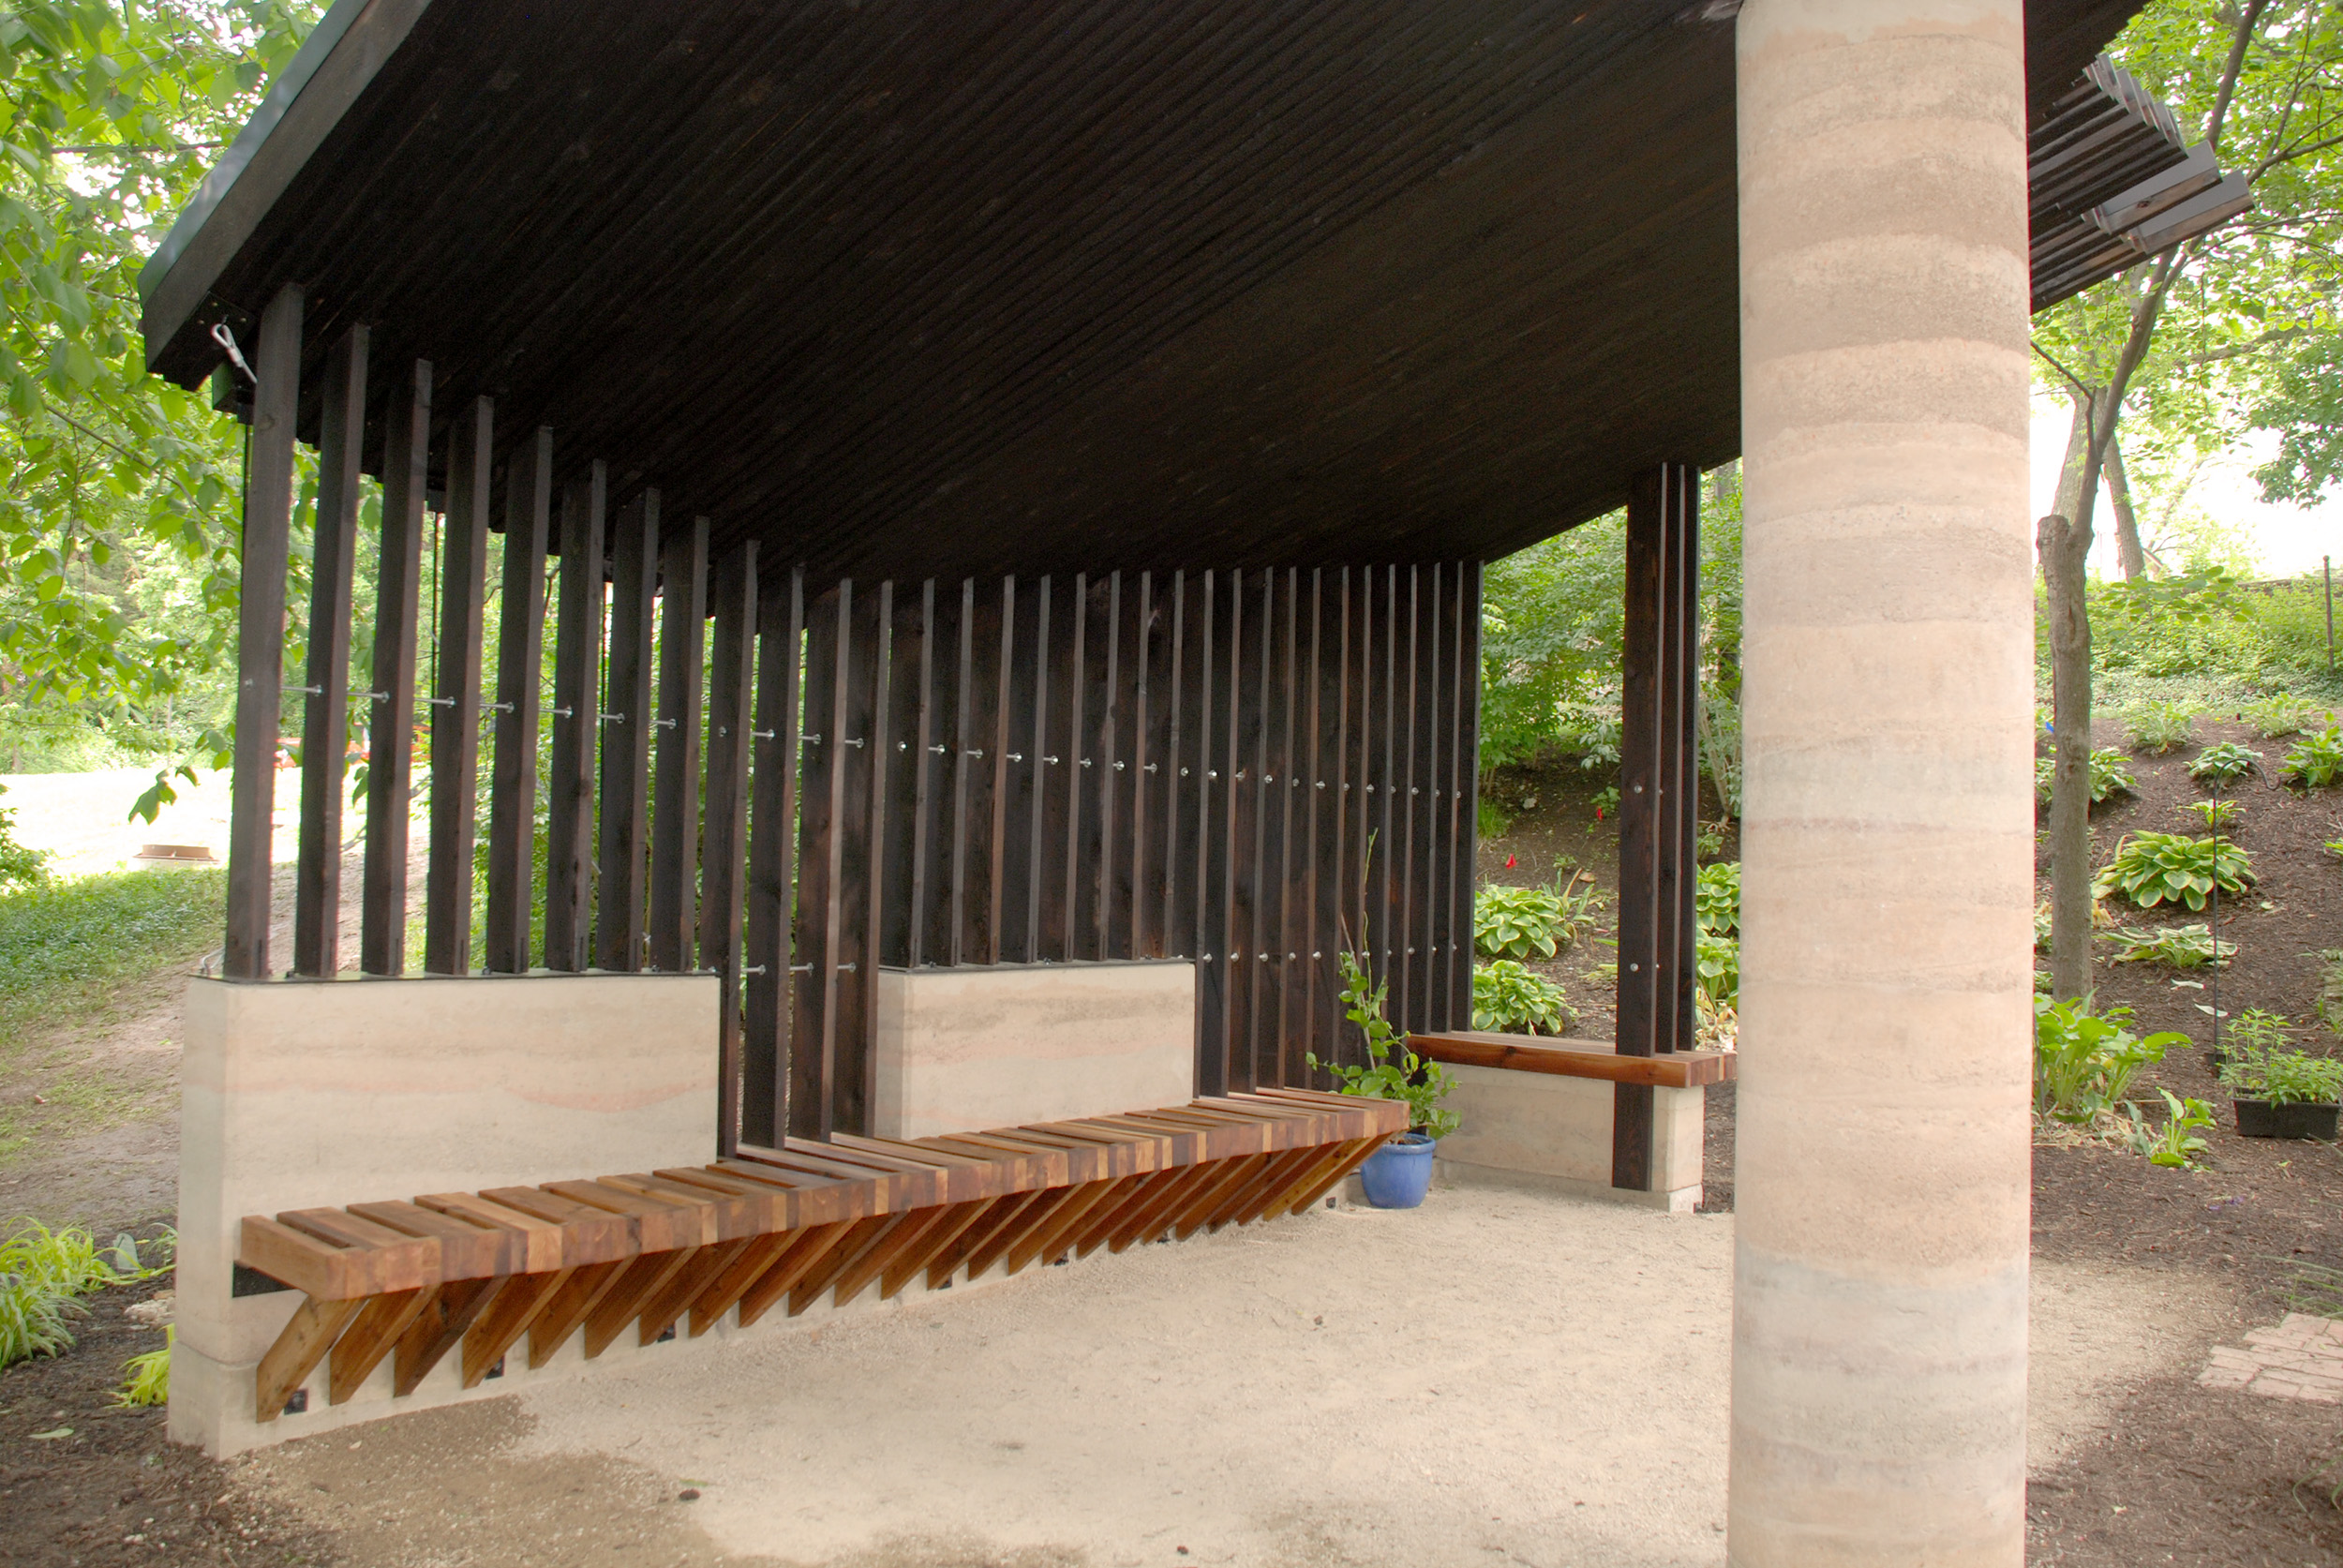 Sensory Pavilion, a mass timber canopy, with shou sugi ban finish